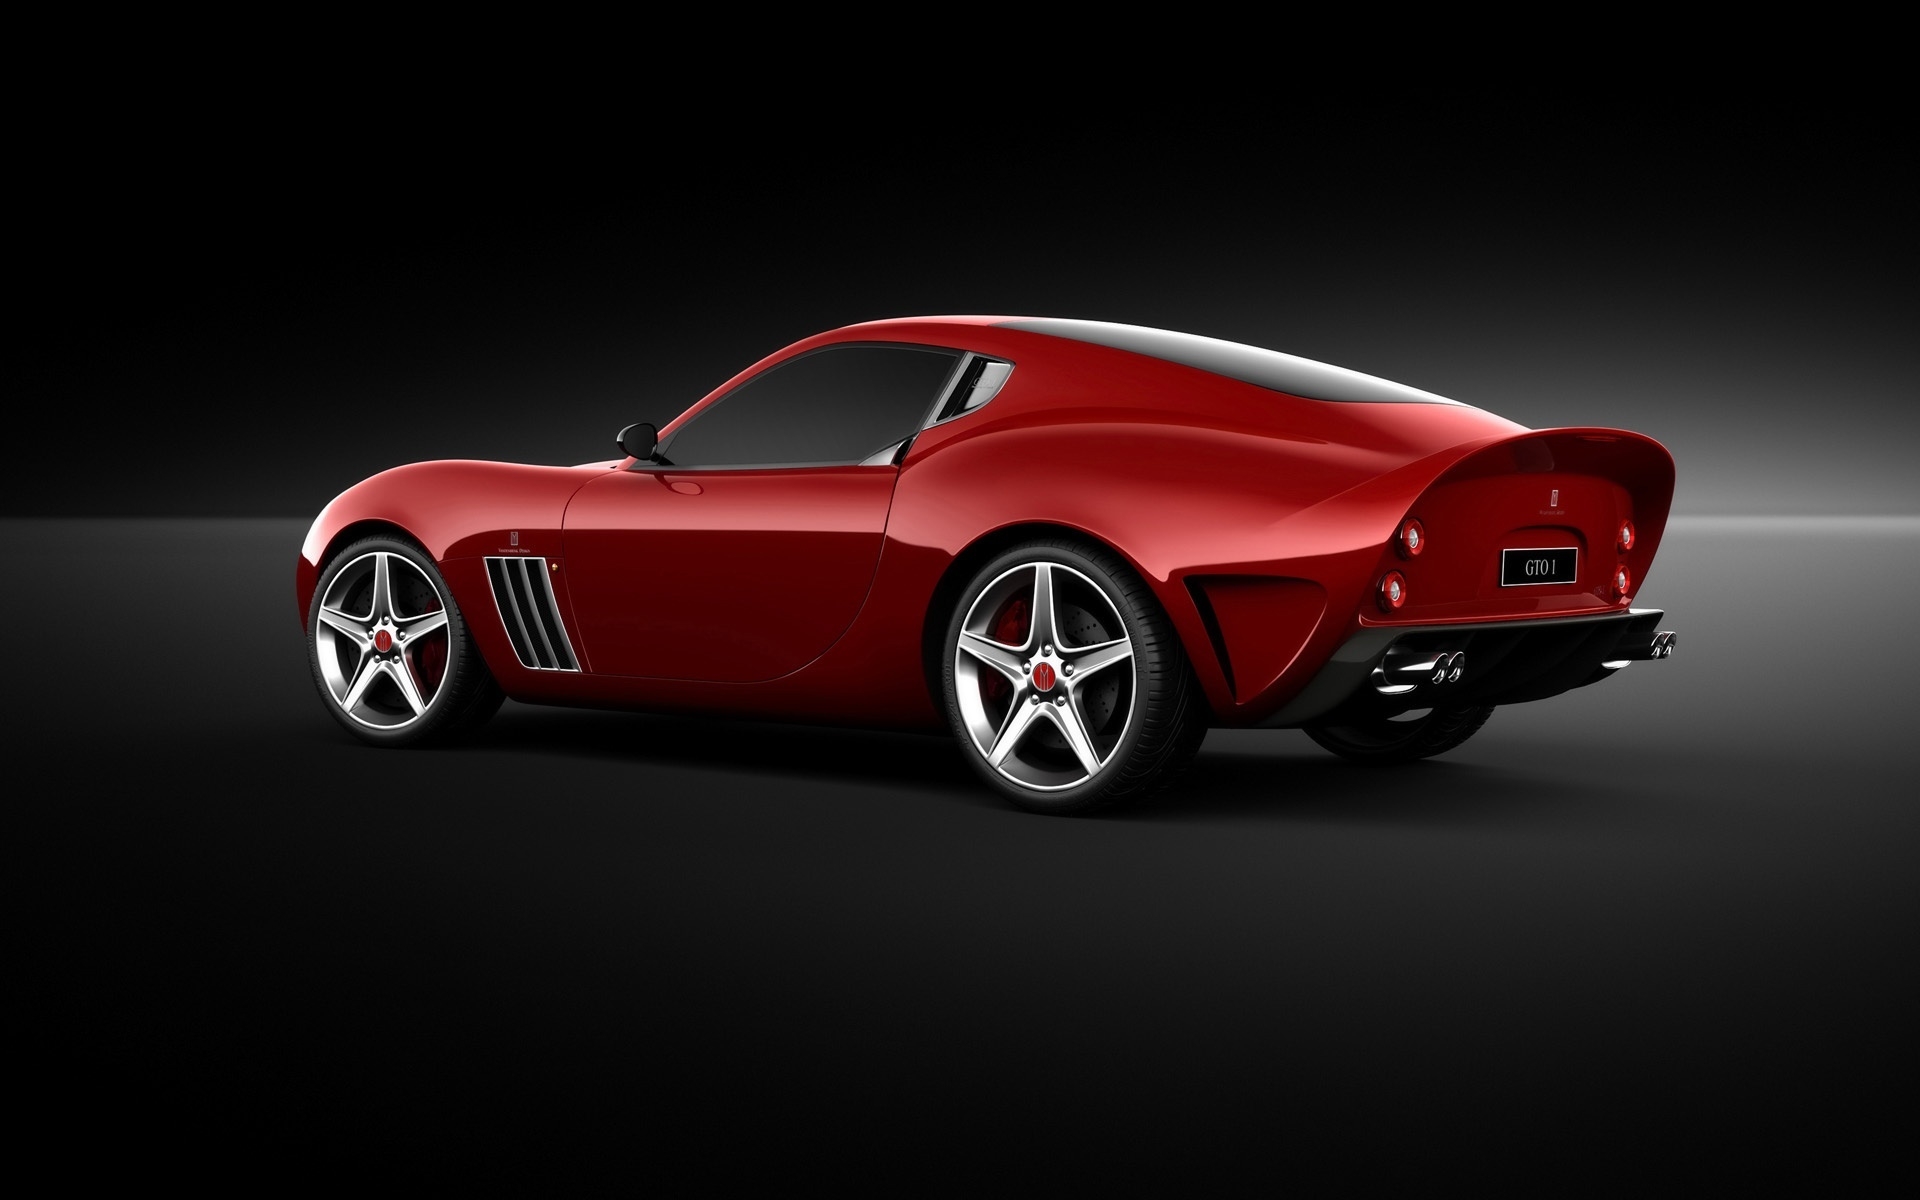 Ferrari Vandenbrink 599 GTO 2009 for 1920 x 1200 widescreen resolution